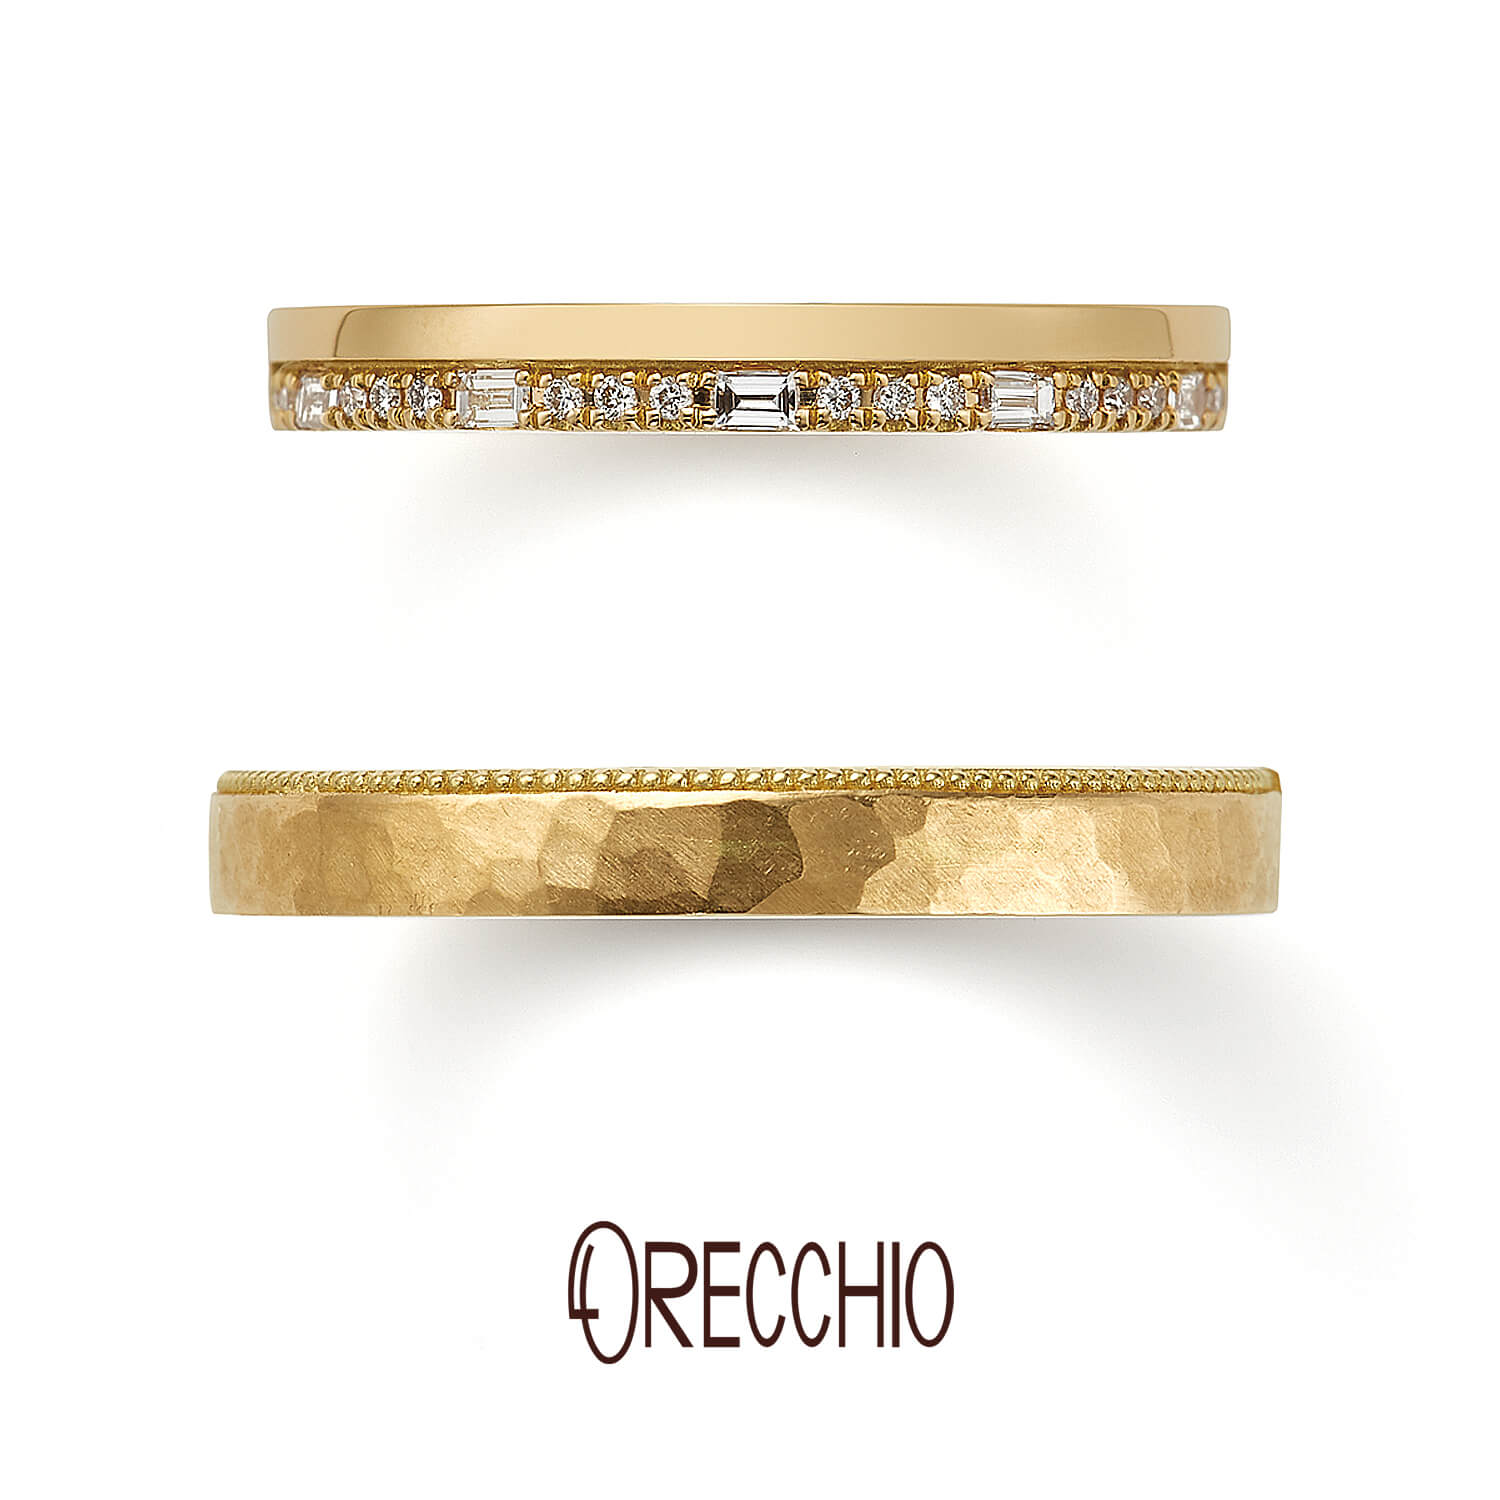 ORECCHIOオレッキオの結婚指輪safariサファリFM-2224とFM-2223